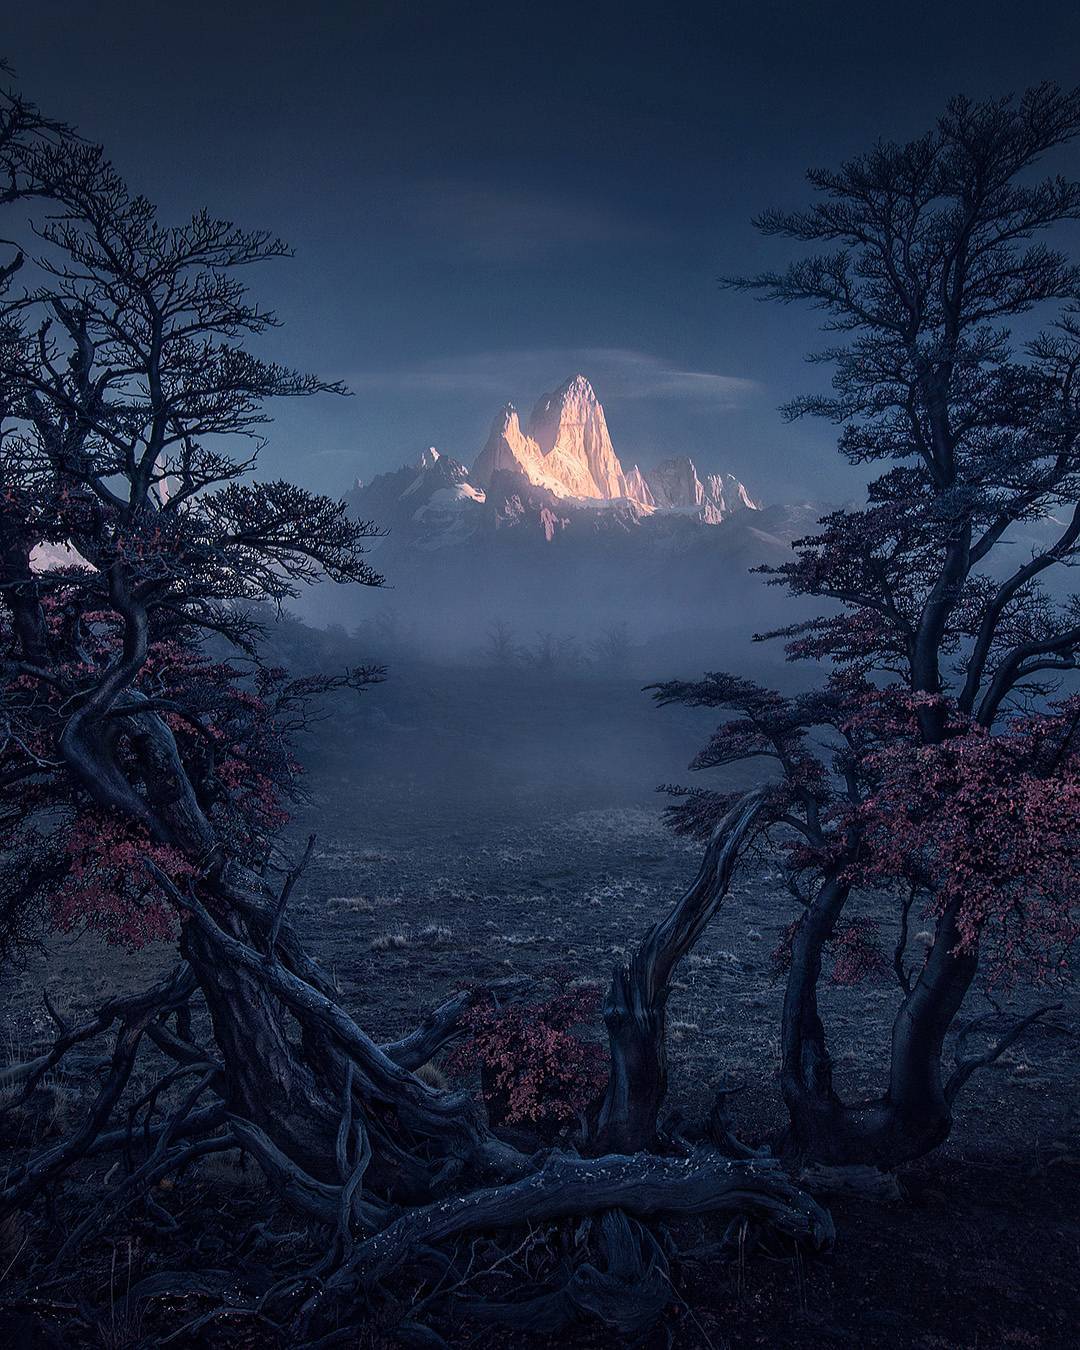  阿根廷巴塔哥尼亚的被光照亮的山峰，来自摄影师Max Rive。 